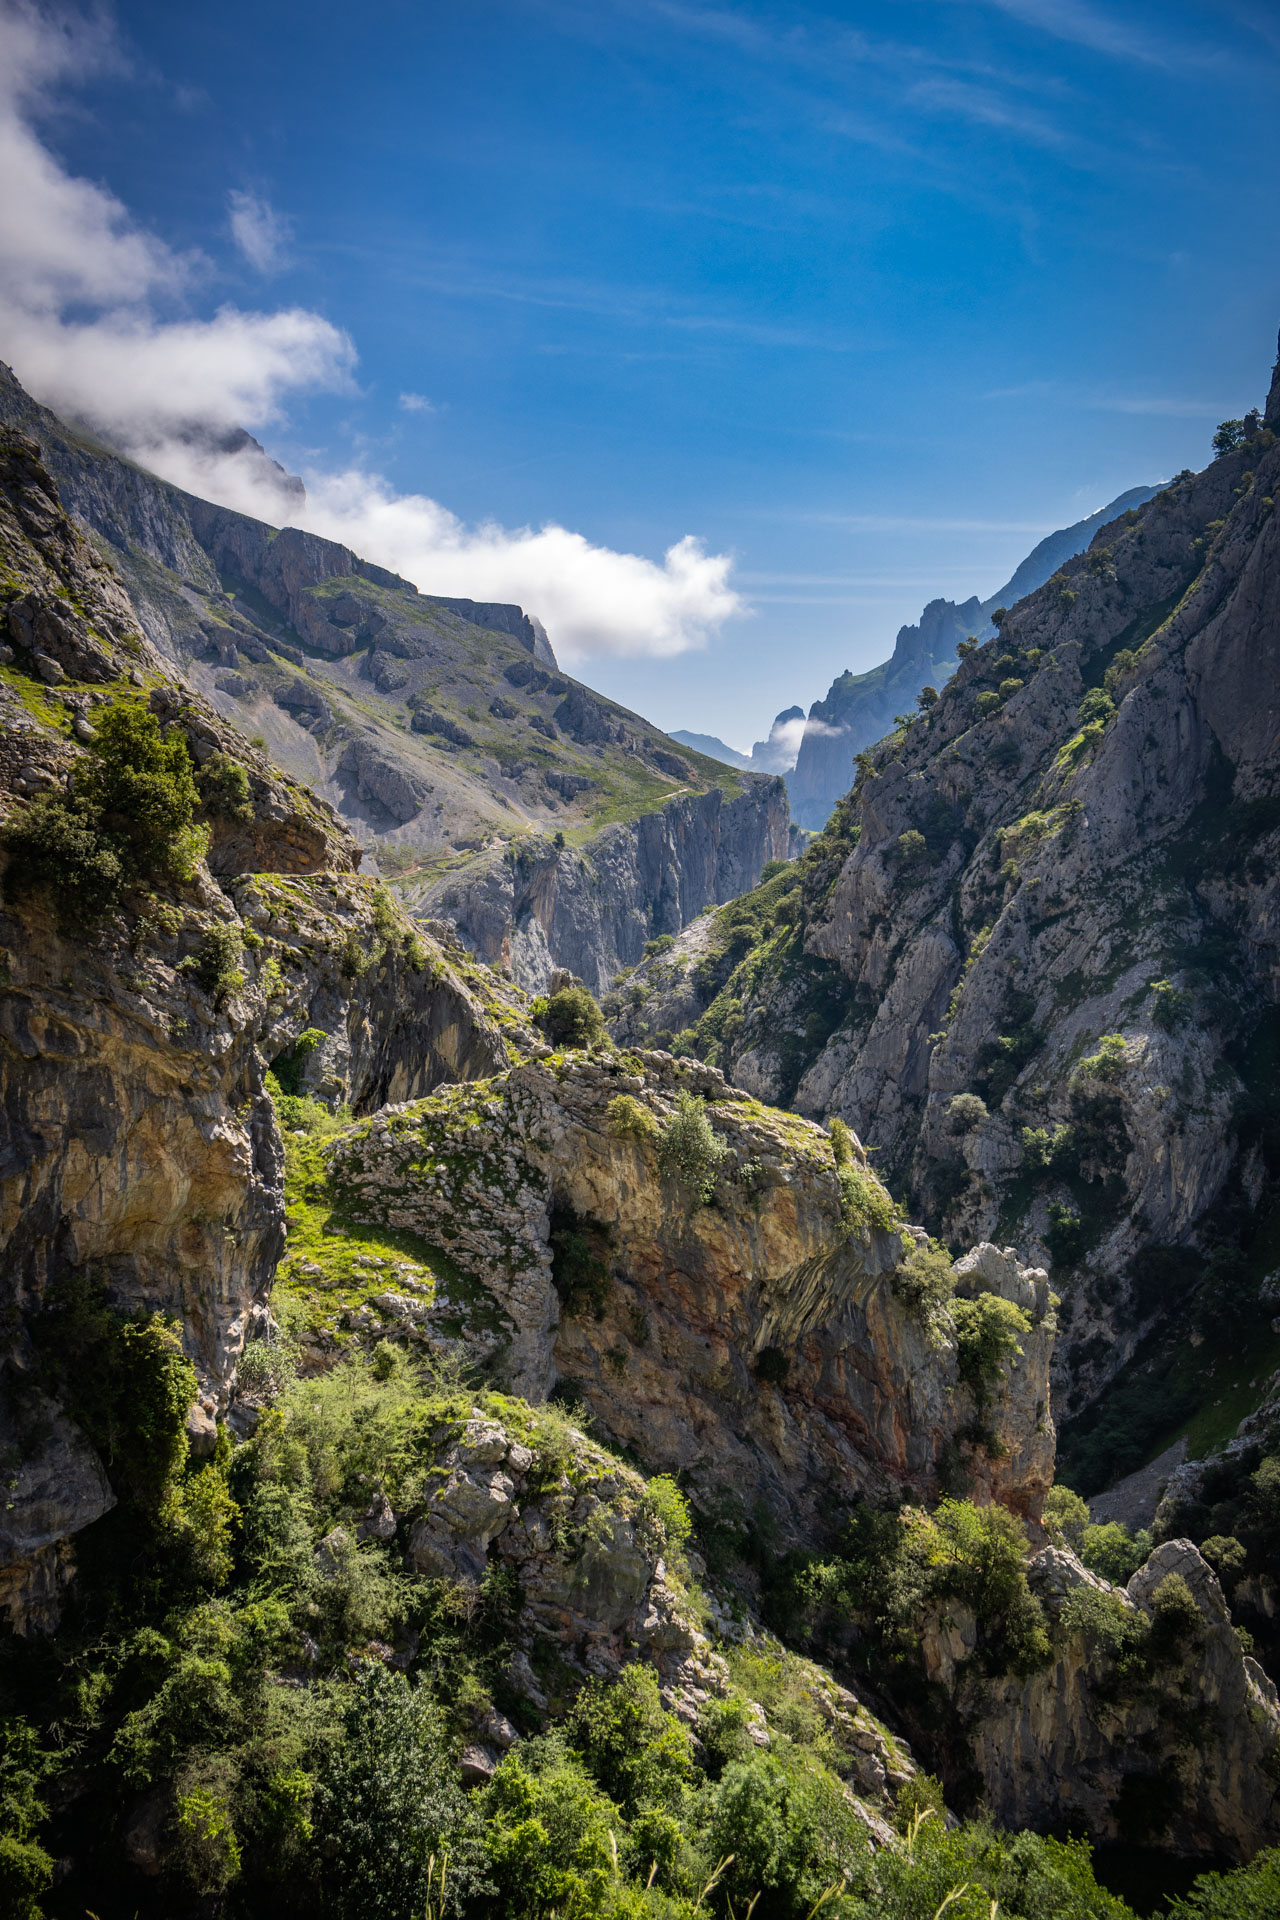 Uitzicht over de rotswanden langs de rivier Cares gezien van wandelroute Ruta del Cares in Spanje